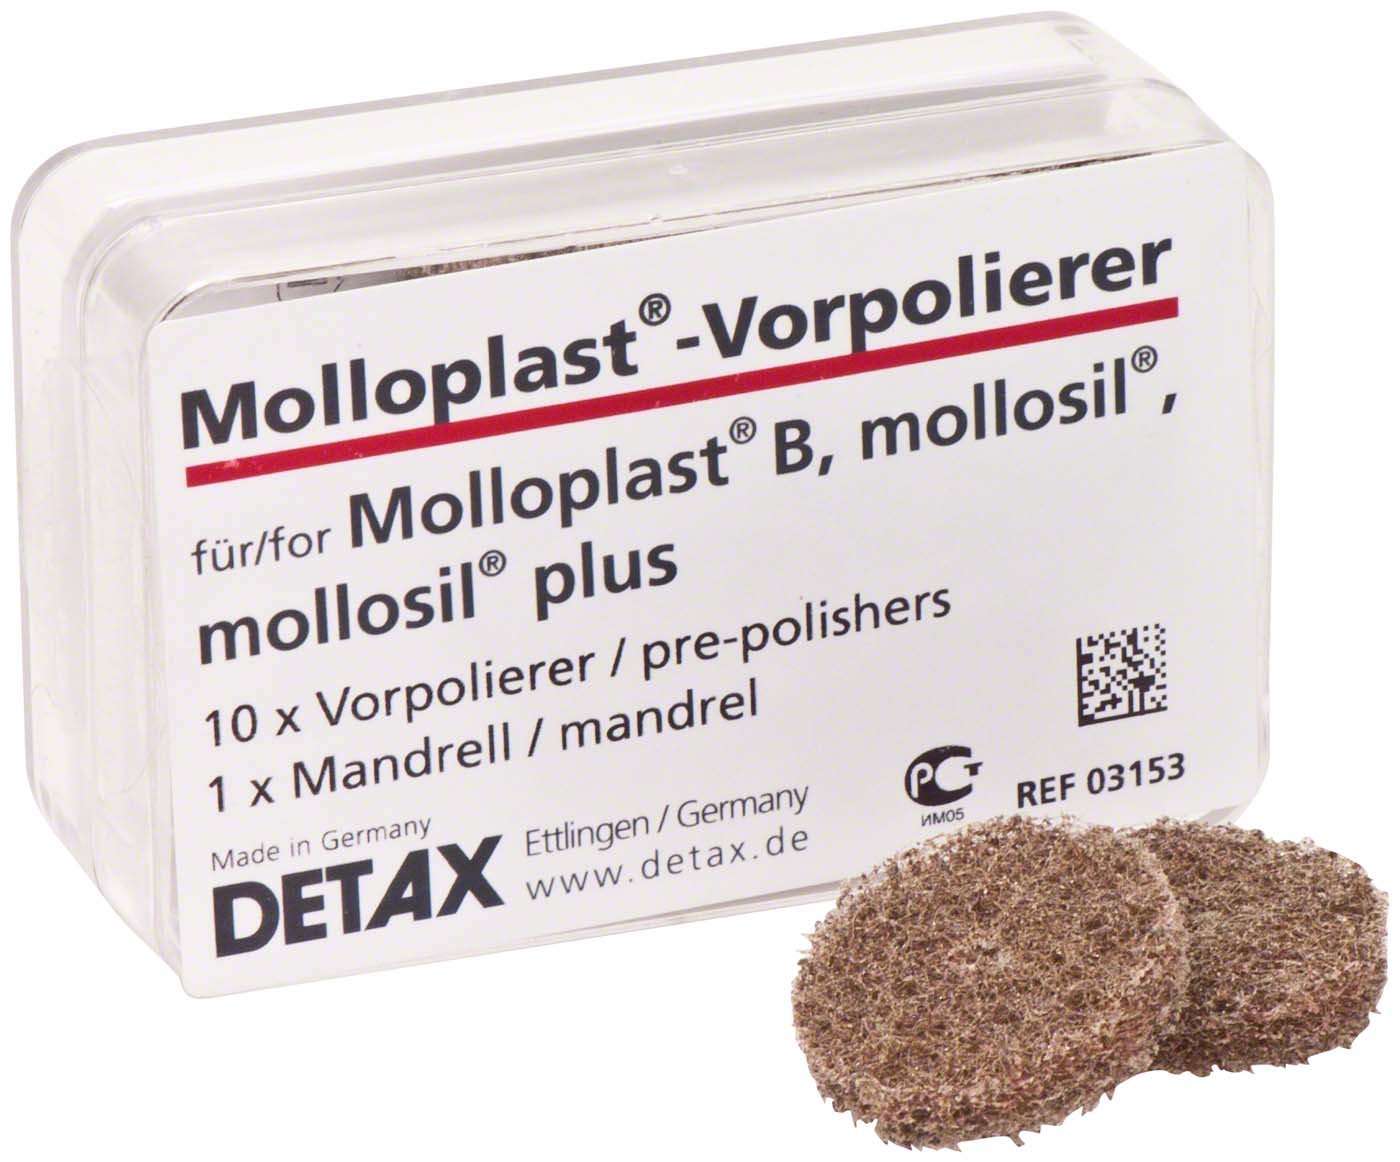 Molloplast® DETAX